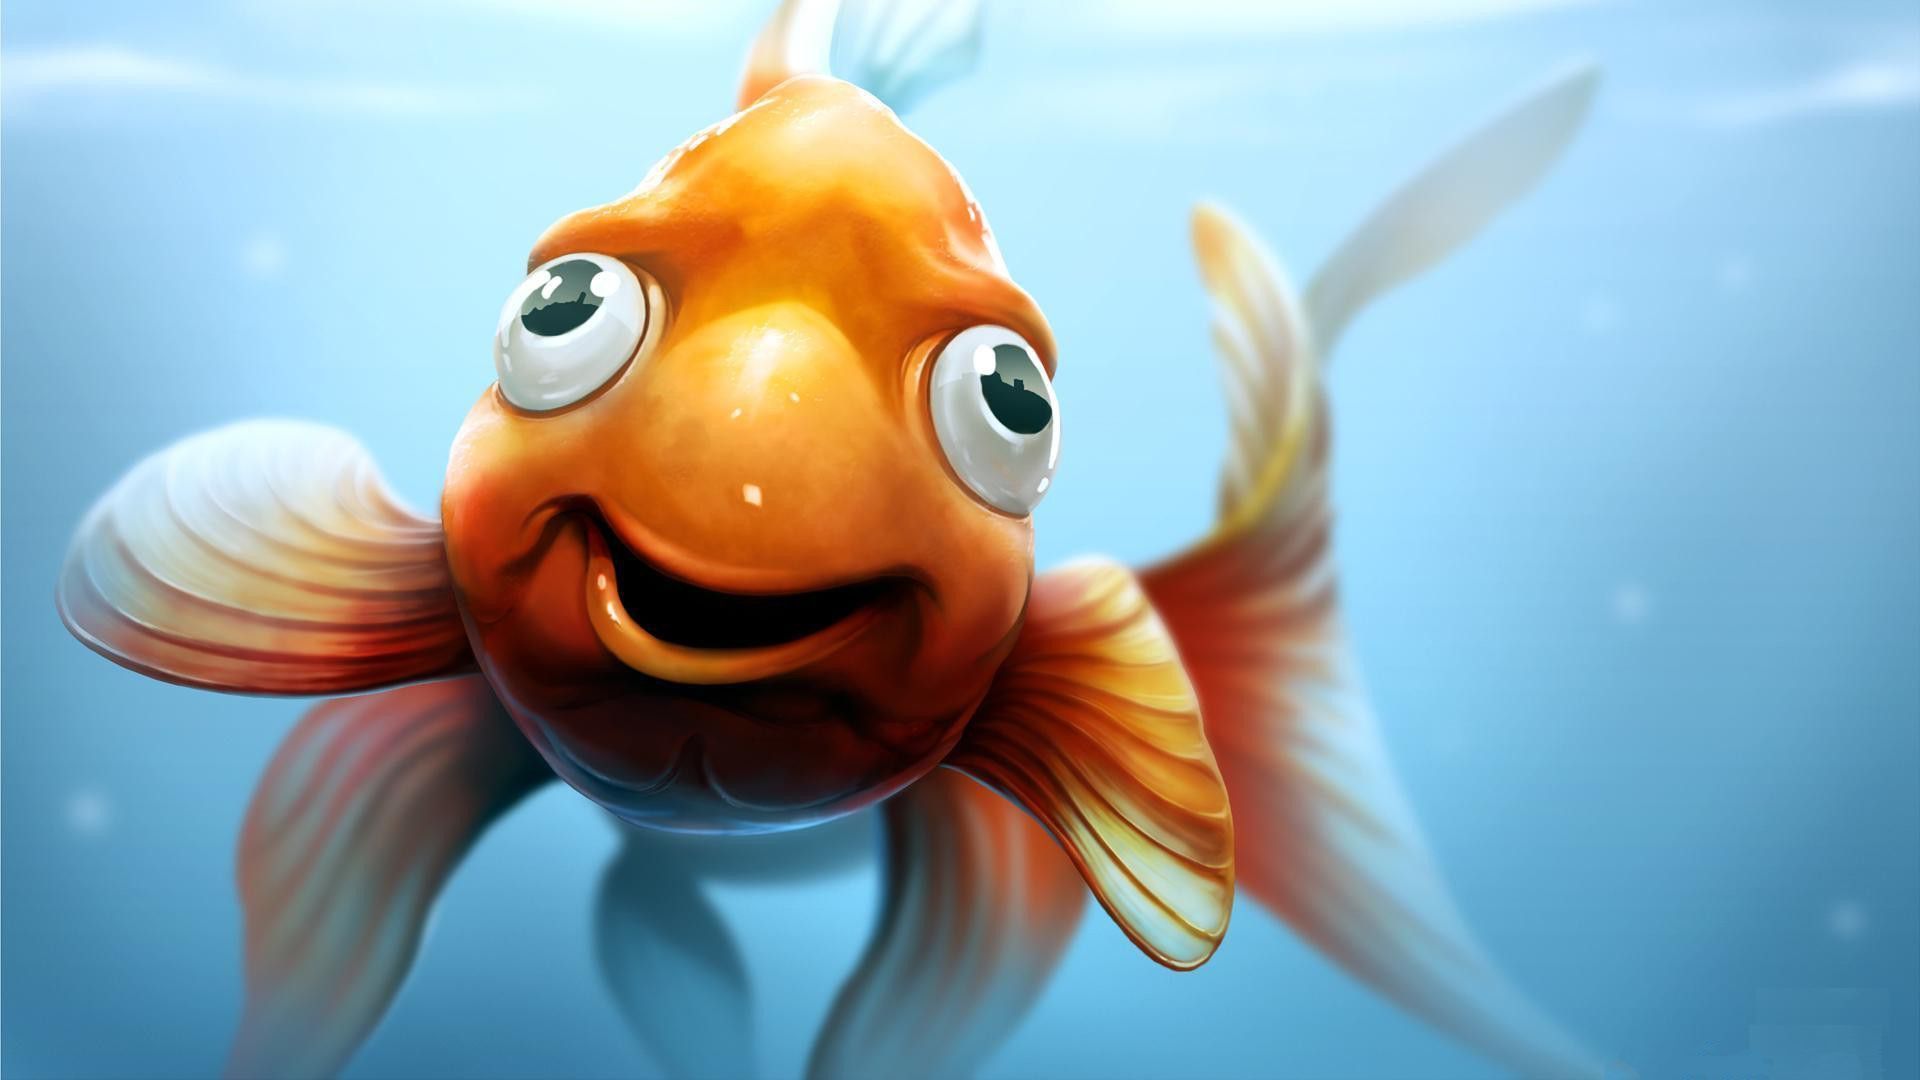 Hình nền cá Koi cho iPhone chất lượng 4K, thu hút năng lượng tích cực